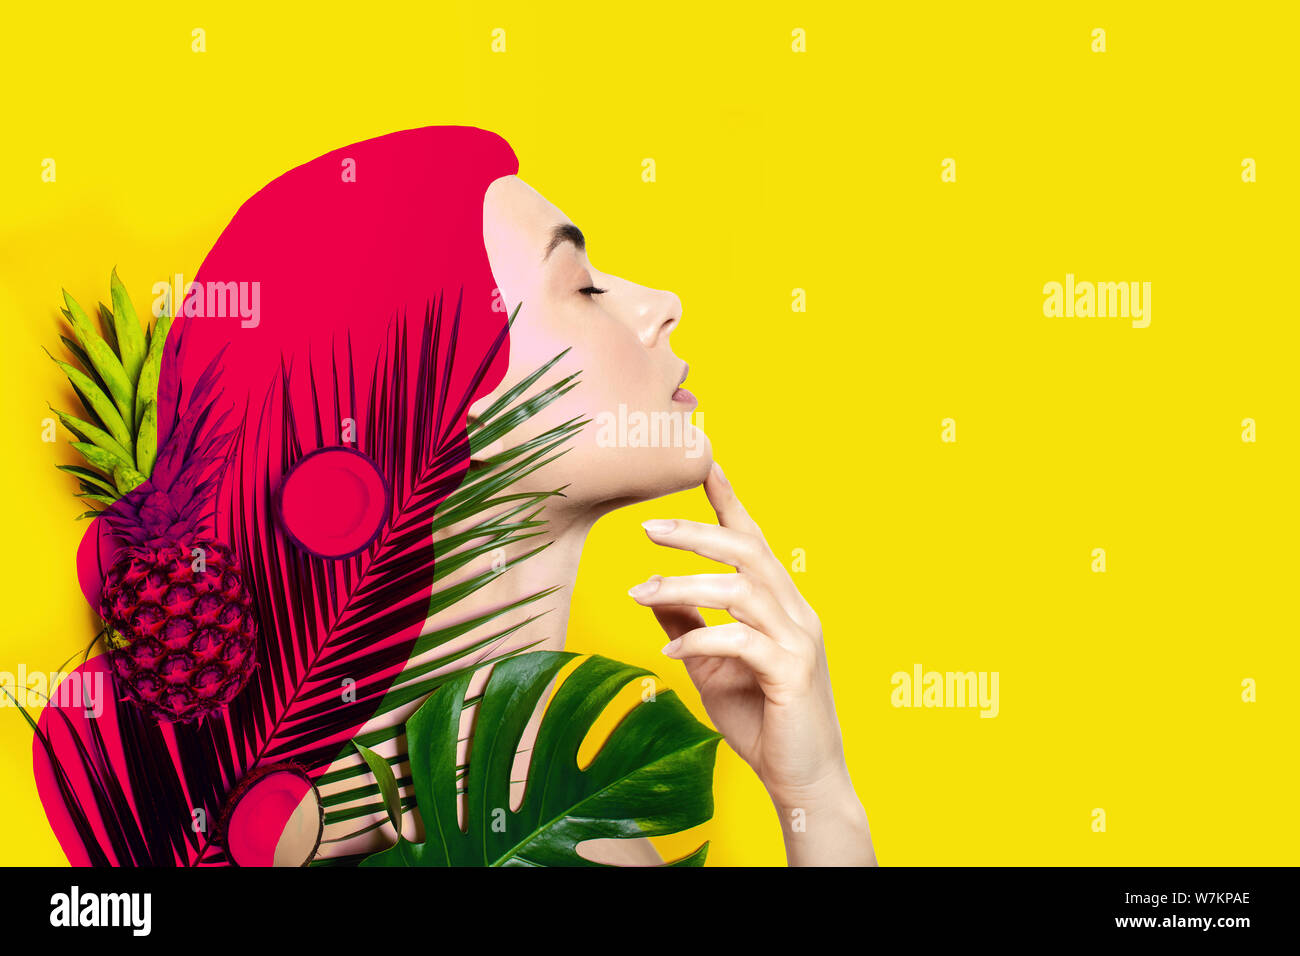 Zeitgenössische Kunst Collage der schönen Frau mit rosa Haaren mit tropischen Früchten und Palmblättern auf gelben Hintergrund. Stockfoto